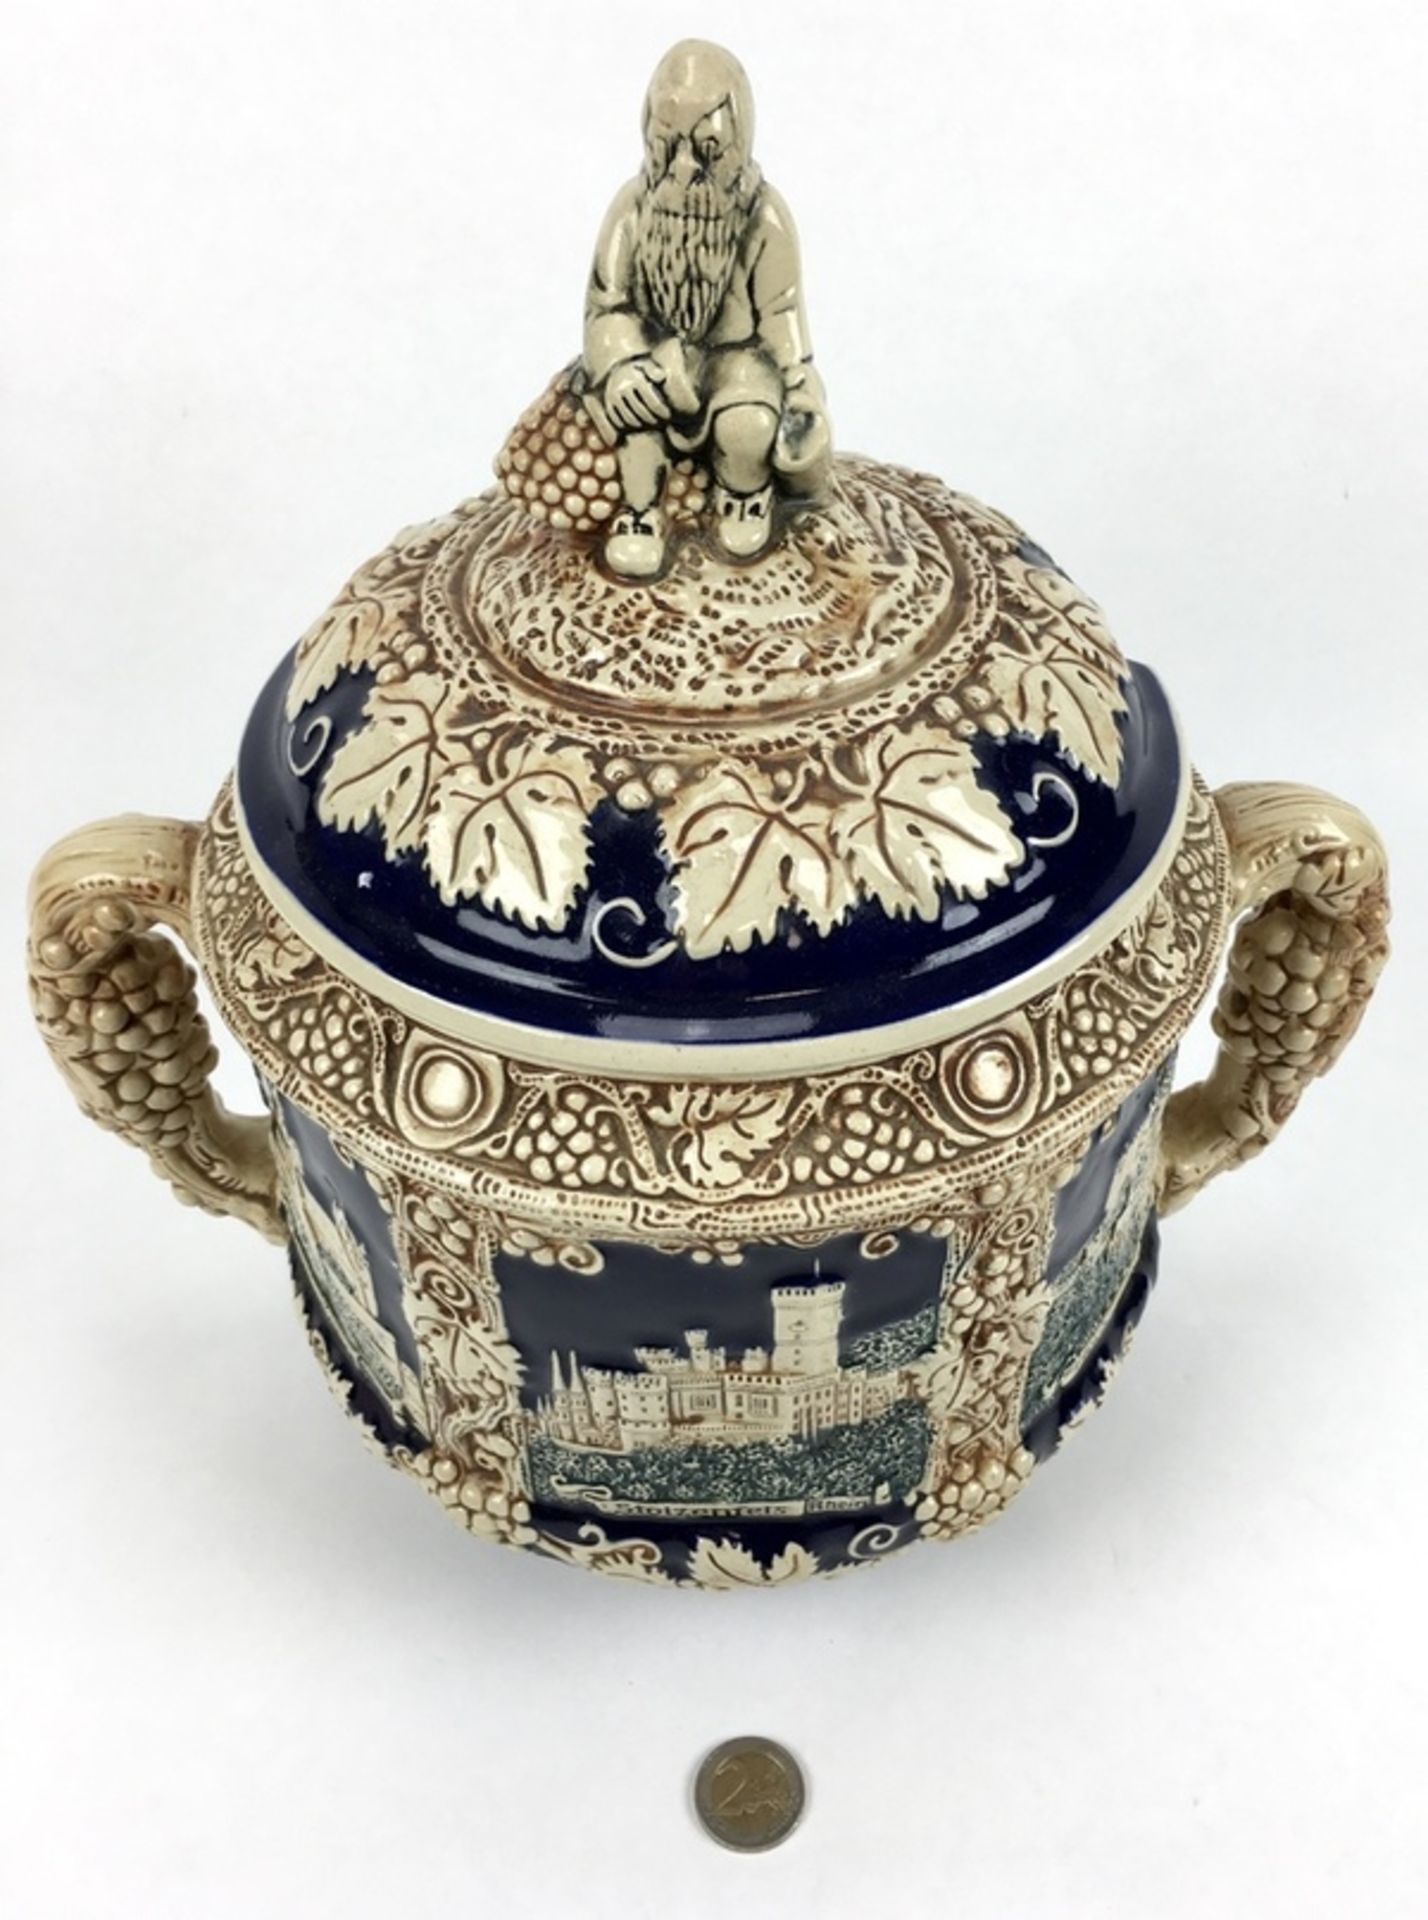 (Curiosa) Aardewerk bowl pot, DuitslandAardewerk bowl pot met druiventrossen decoratie. Duitsla - Bild 2 aus 8